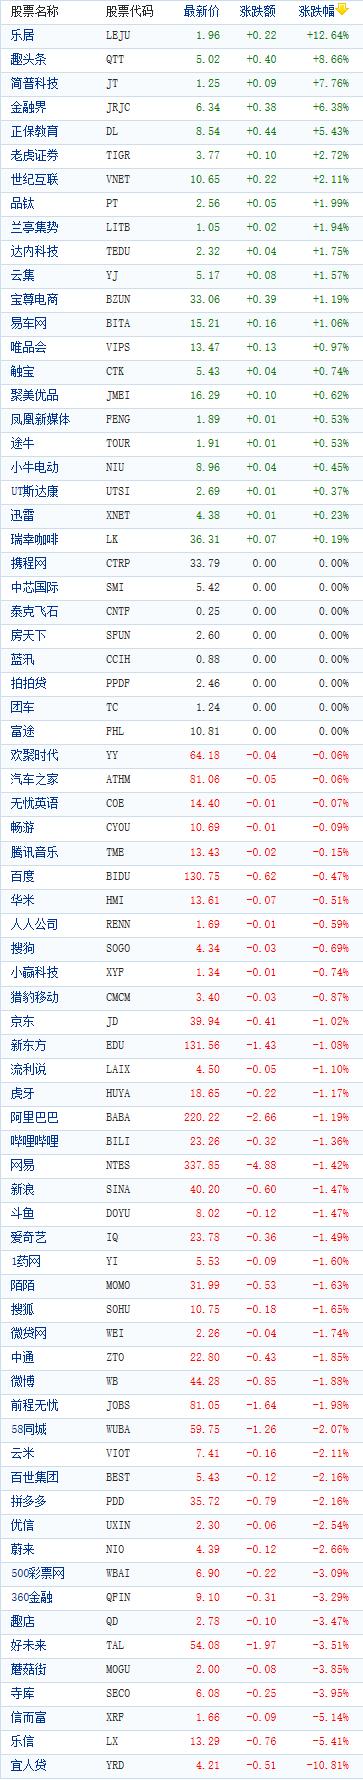 中国概念股周三收盘多数下跌 宜人贷重挫近11%